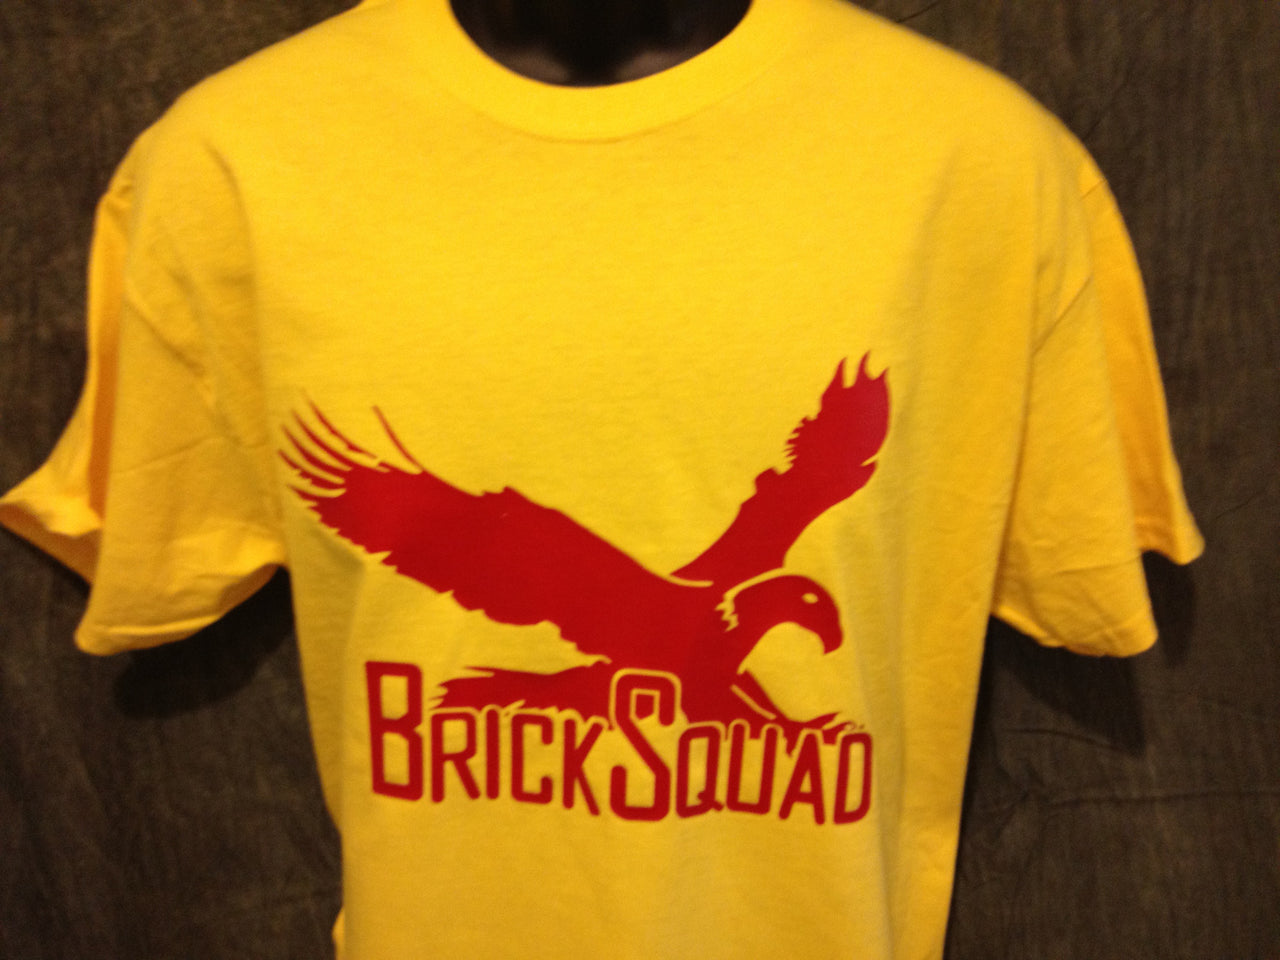 Brick Squad Tshirt: Yellow With Red Print - TshirtNow.net - 3